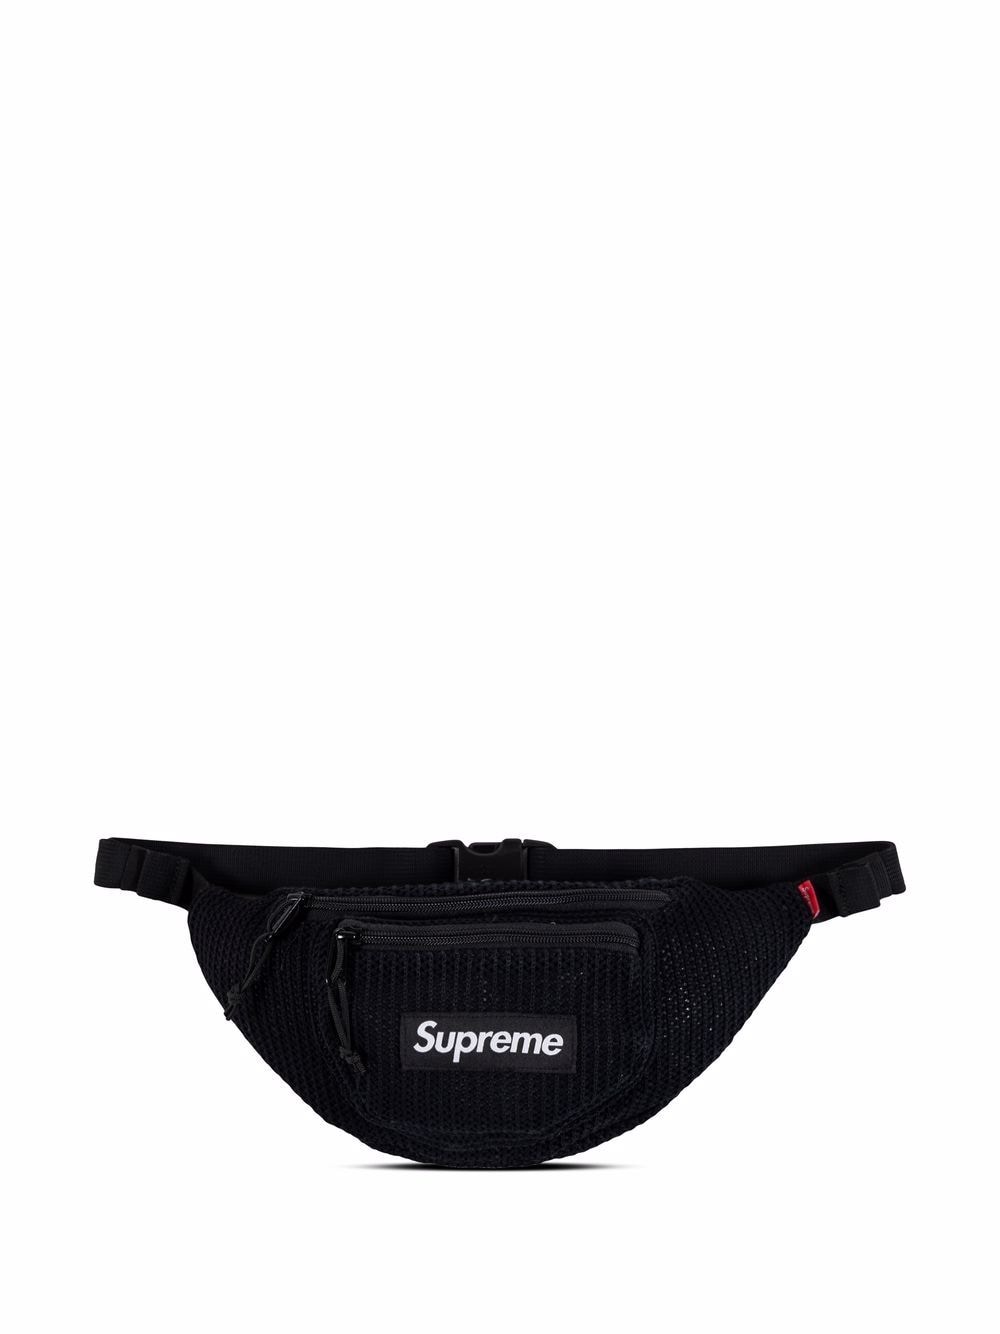 Supreme string waist bag - Black von Supreme